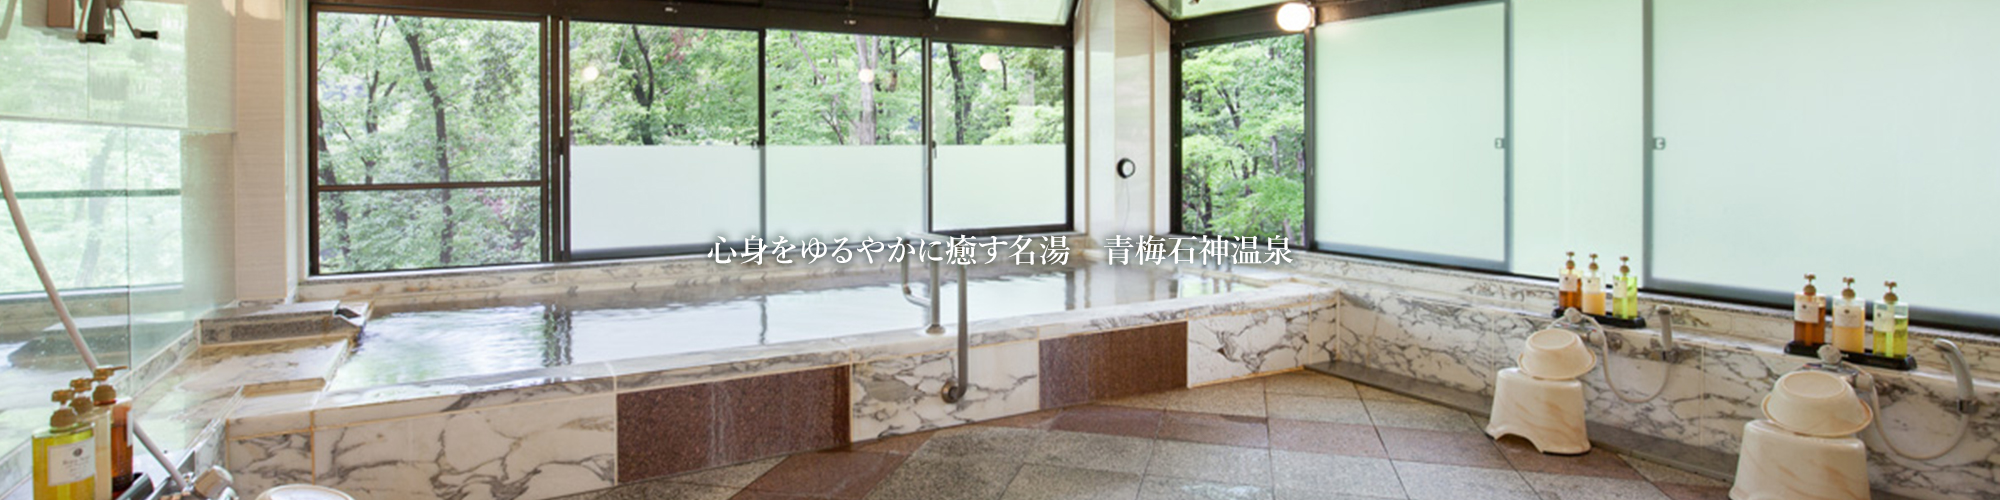 公式サイト 東京 青梅石神温泉 清流の宿 おくたま路 ビューホテルグループ